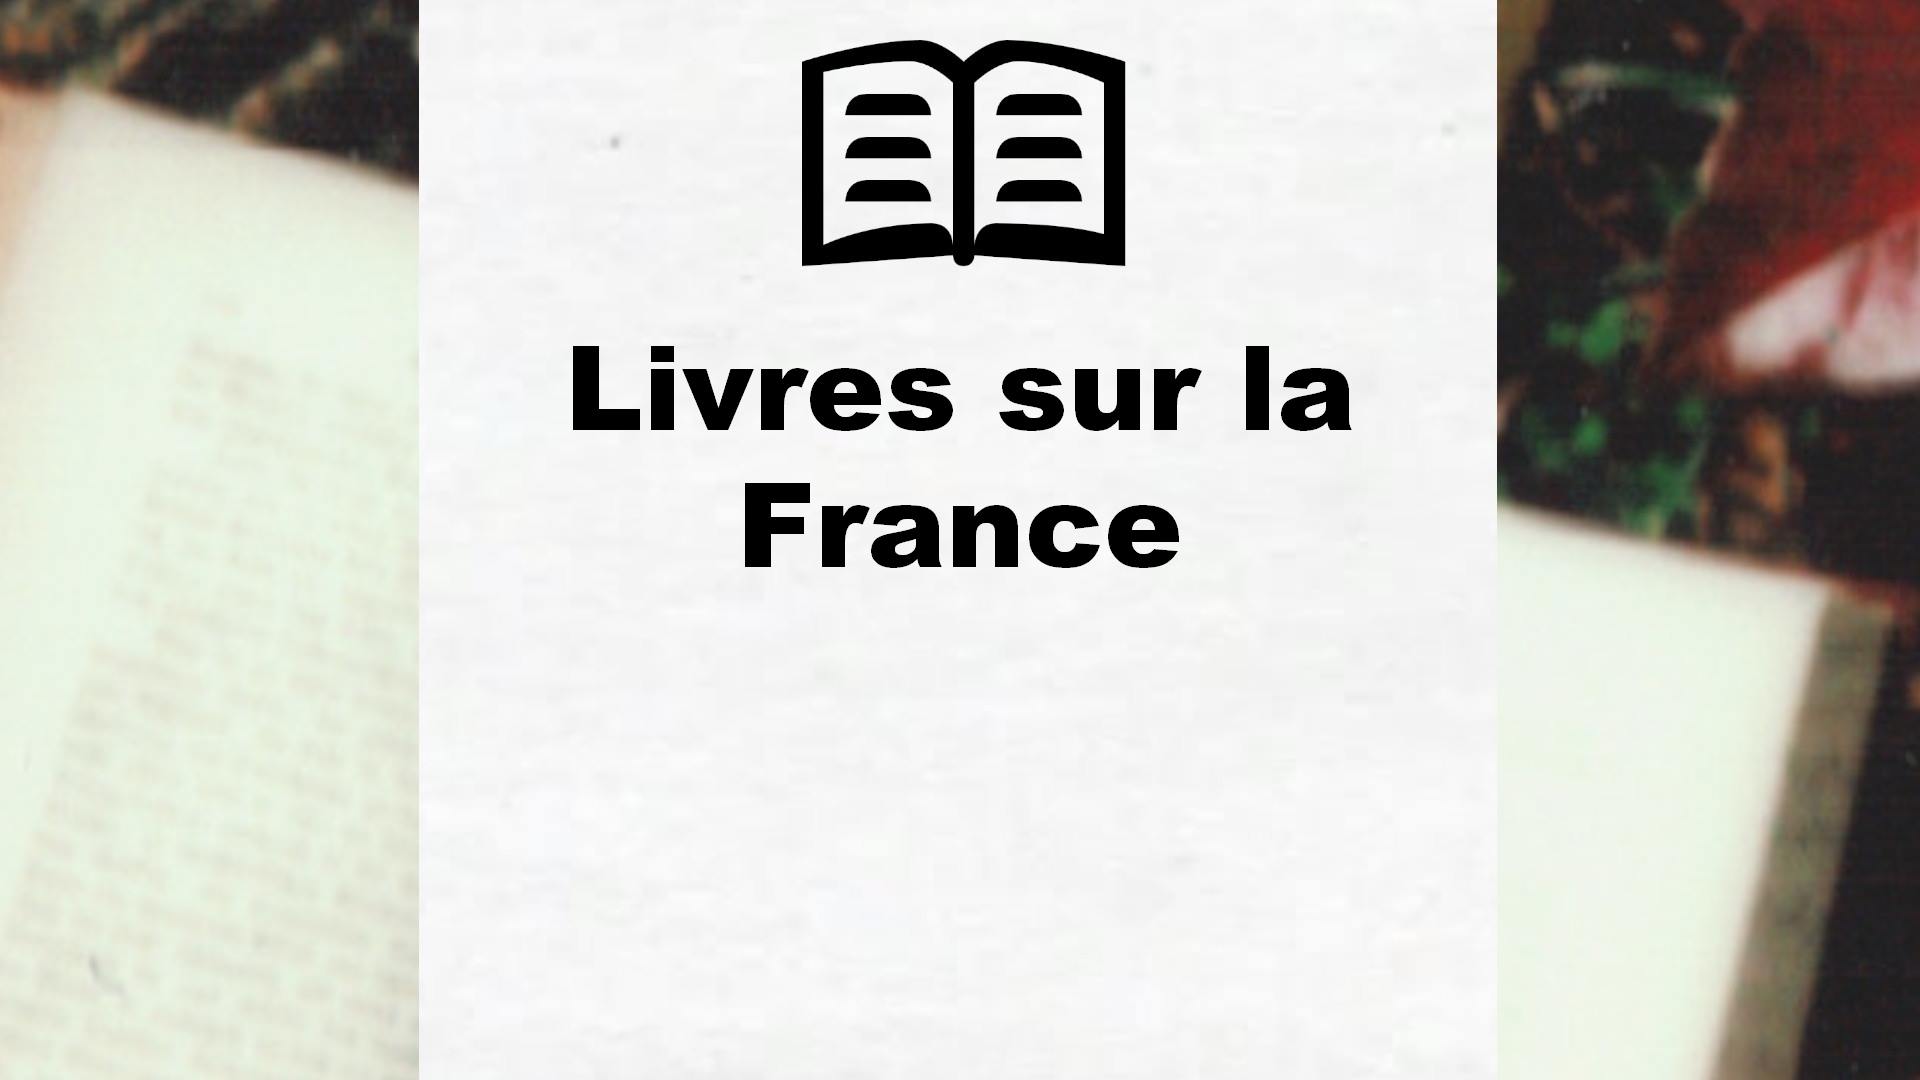 Livres sur la France